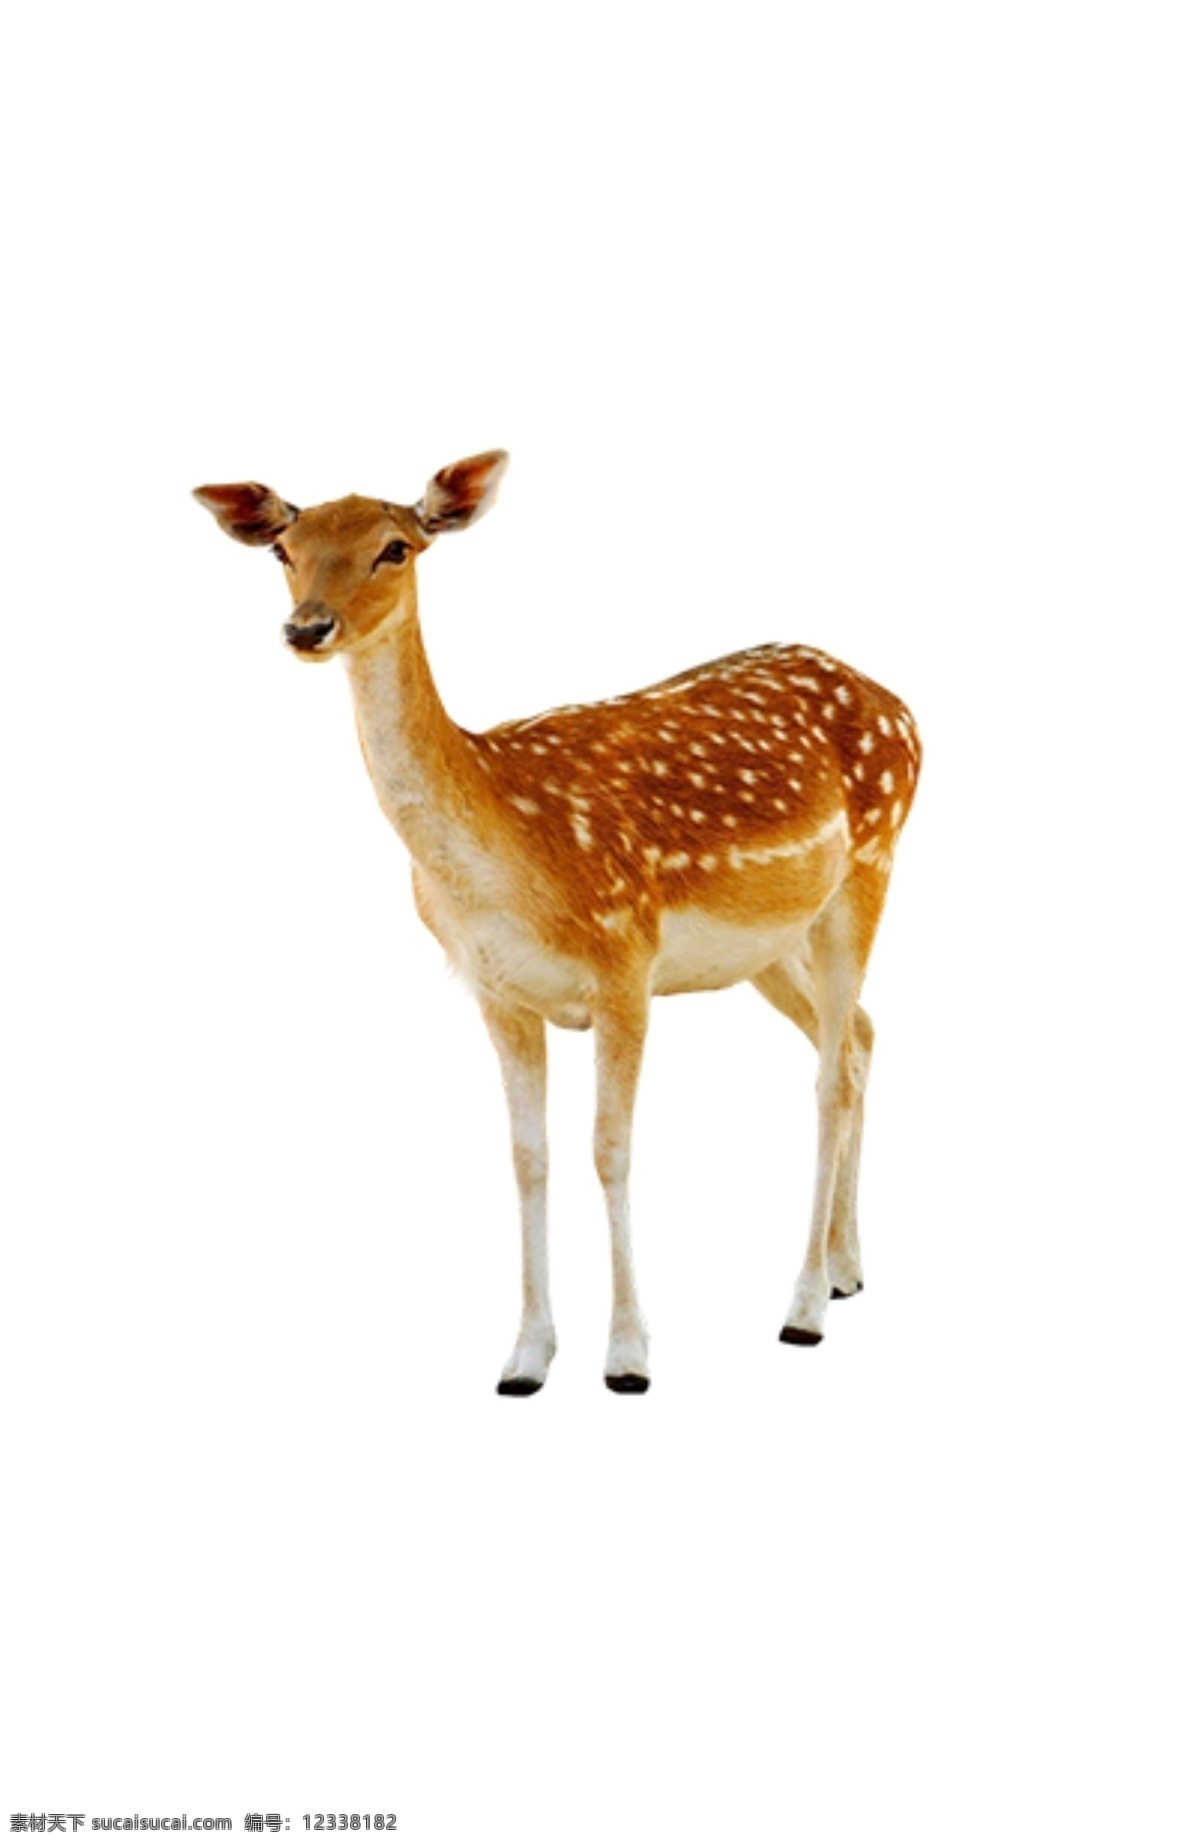 梅花鹿透明 梅花鹿 小鹿 红色鹿 斑纹鹿 长耳朵鹿 生物世界 野生动物